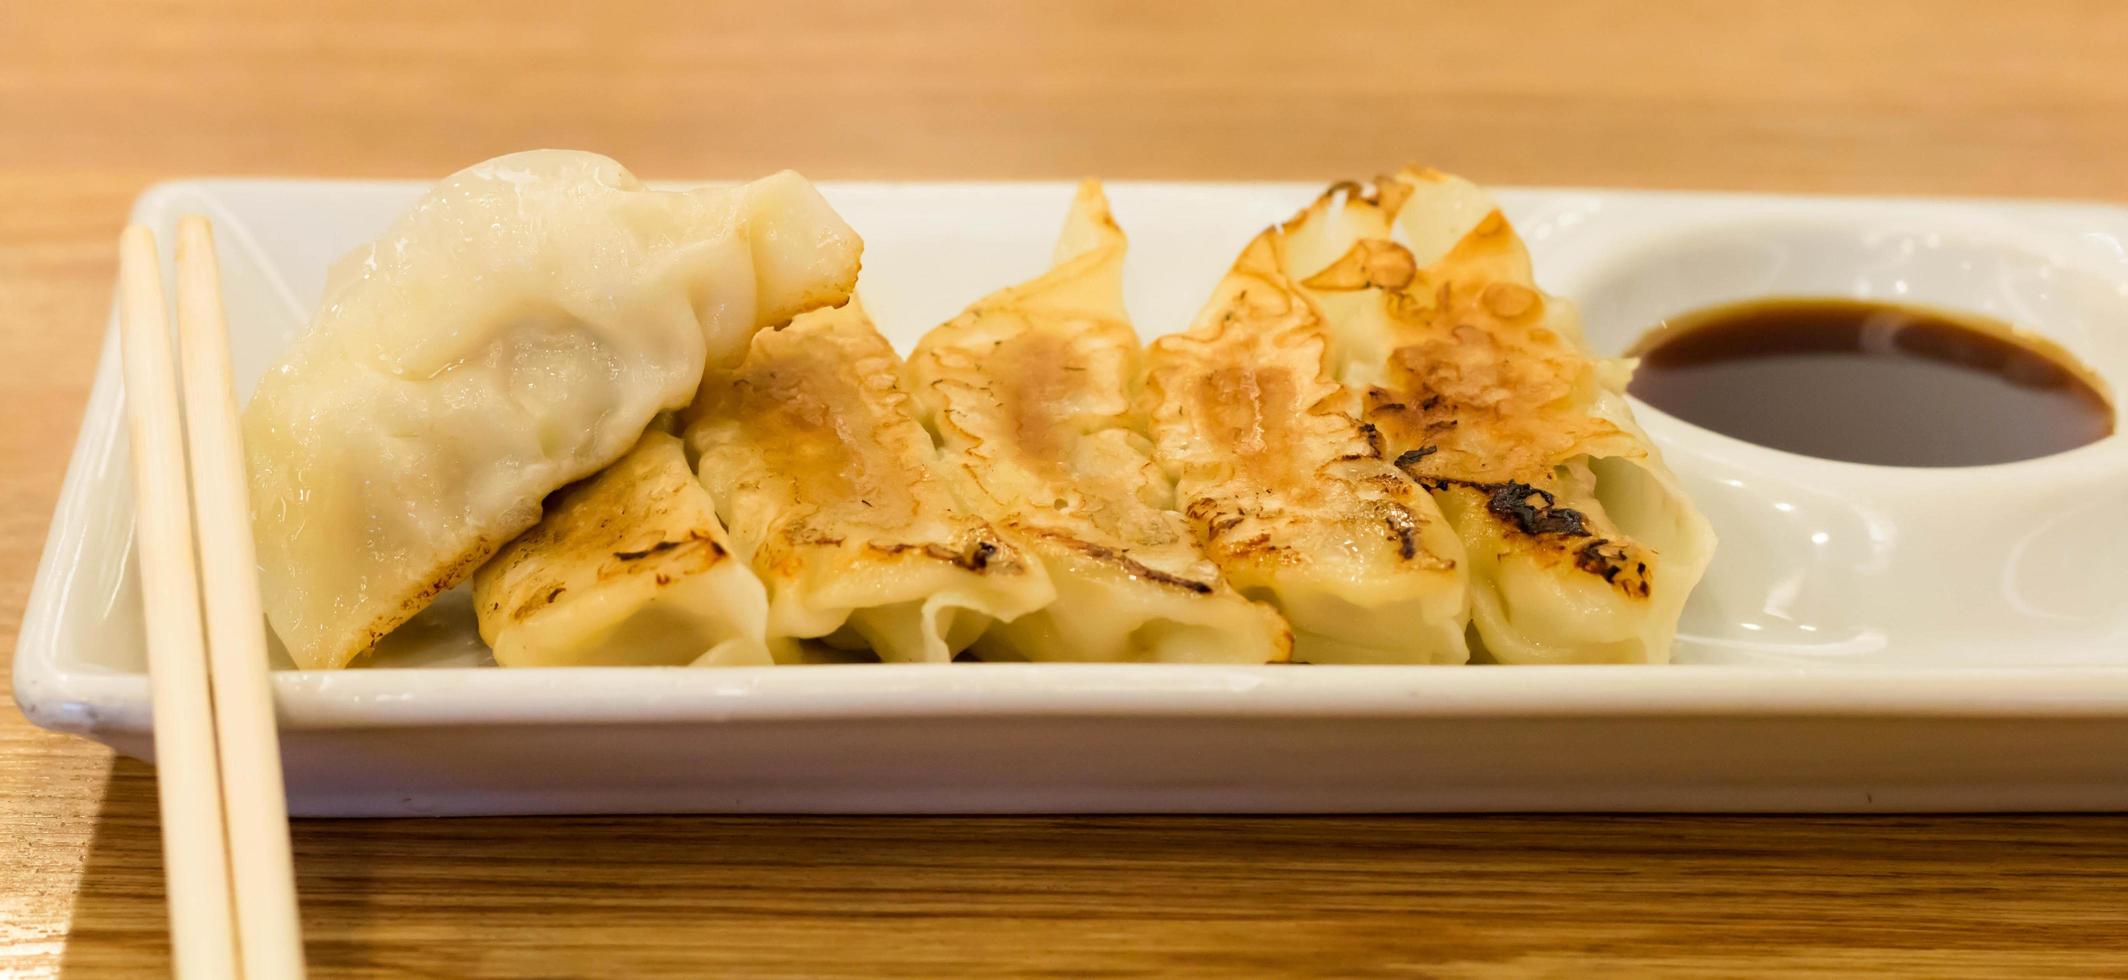 fried dumplings on table photo